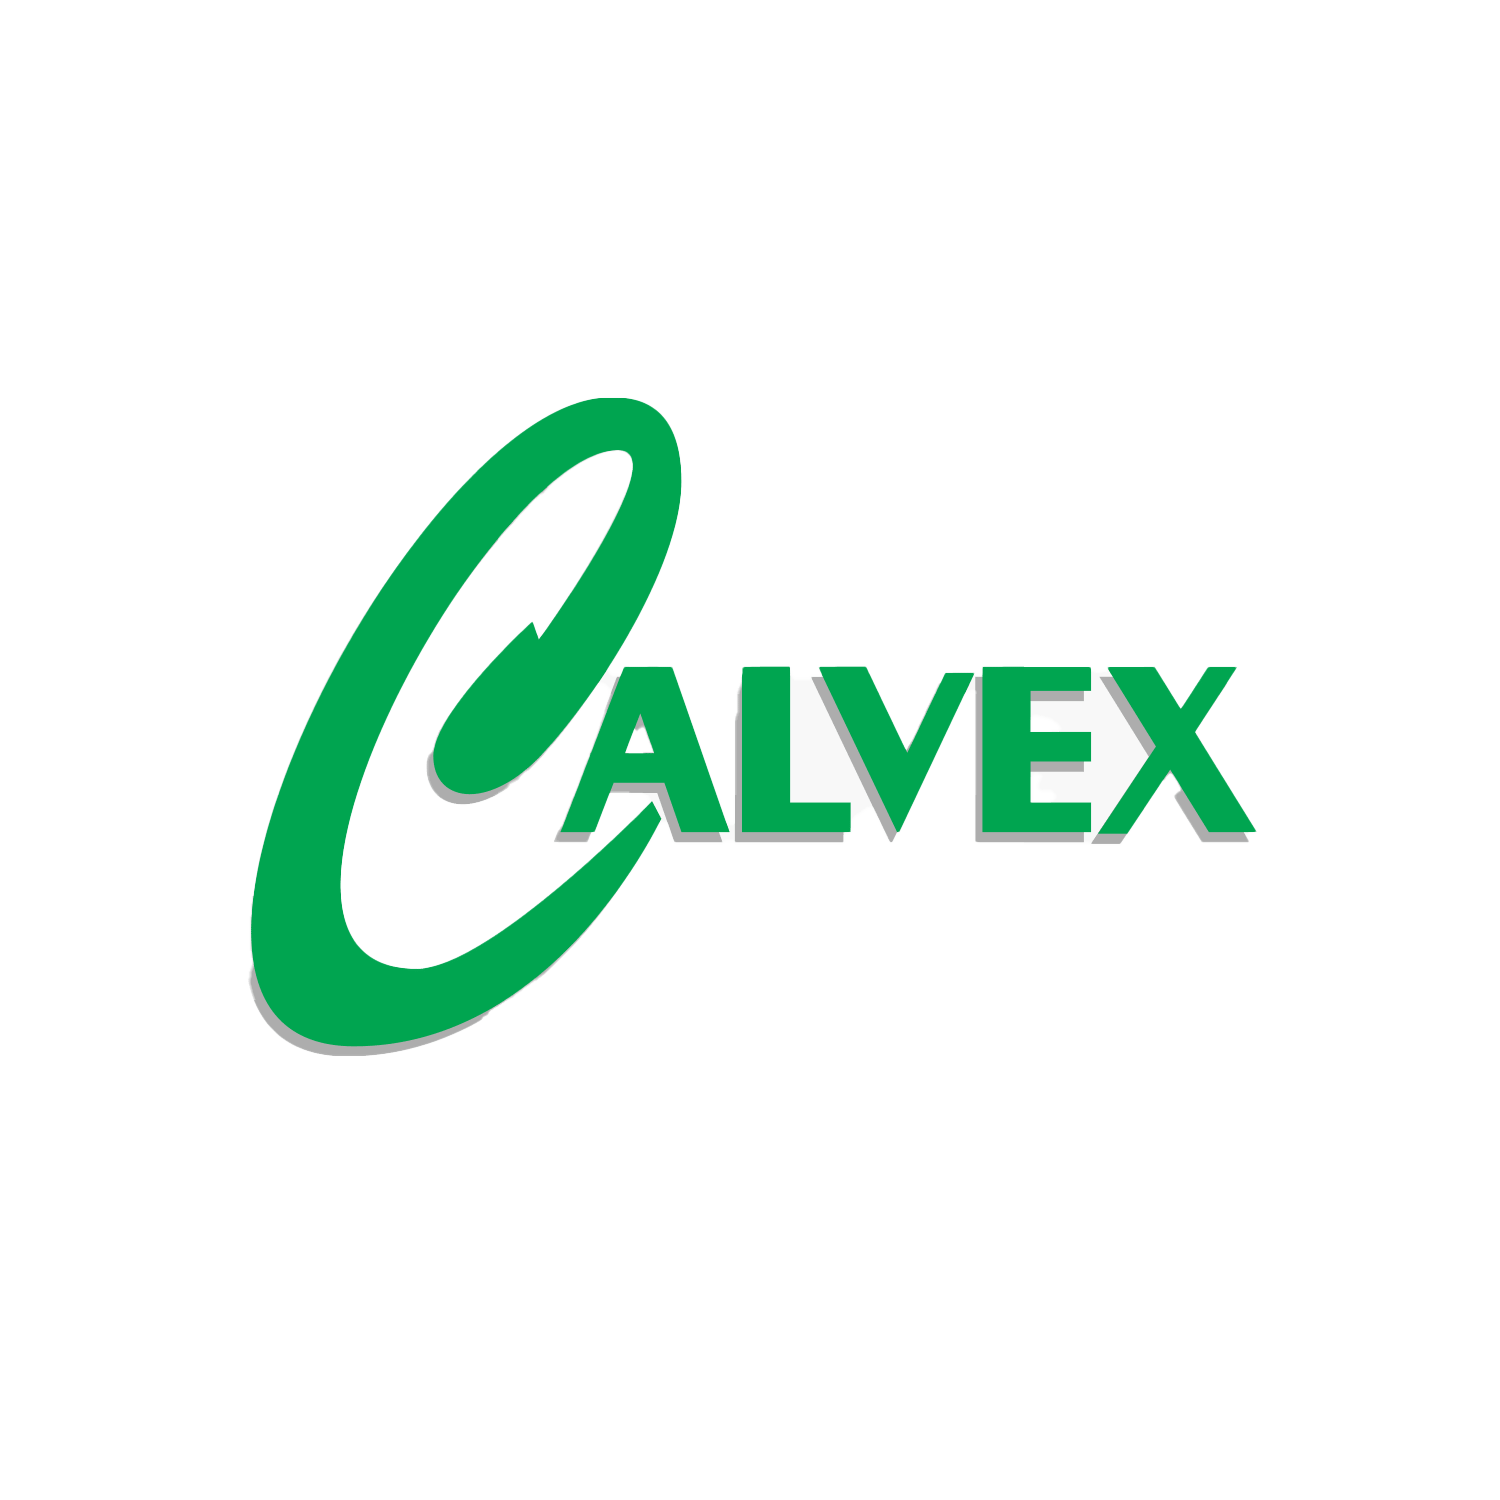 Calvex-News-Logo-Image